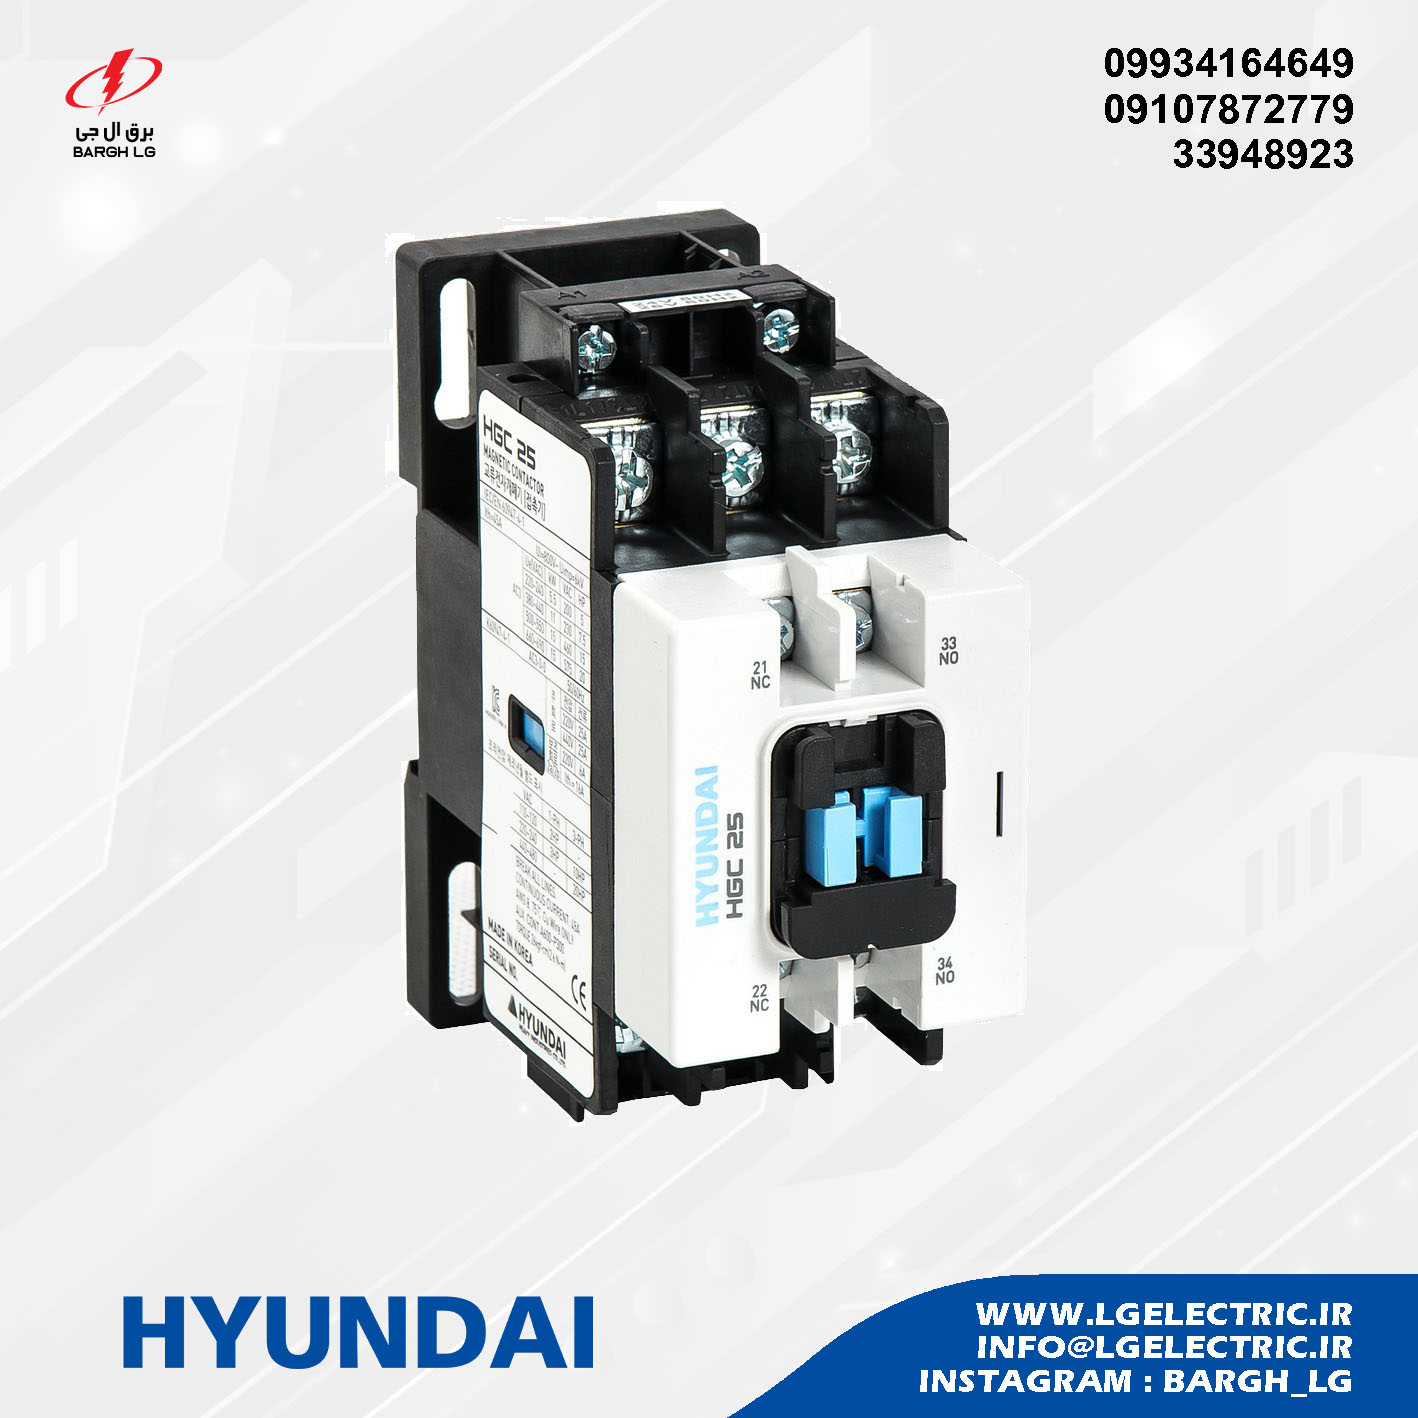 HYUNDAI Contactor HGC25